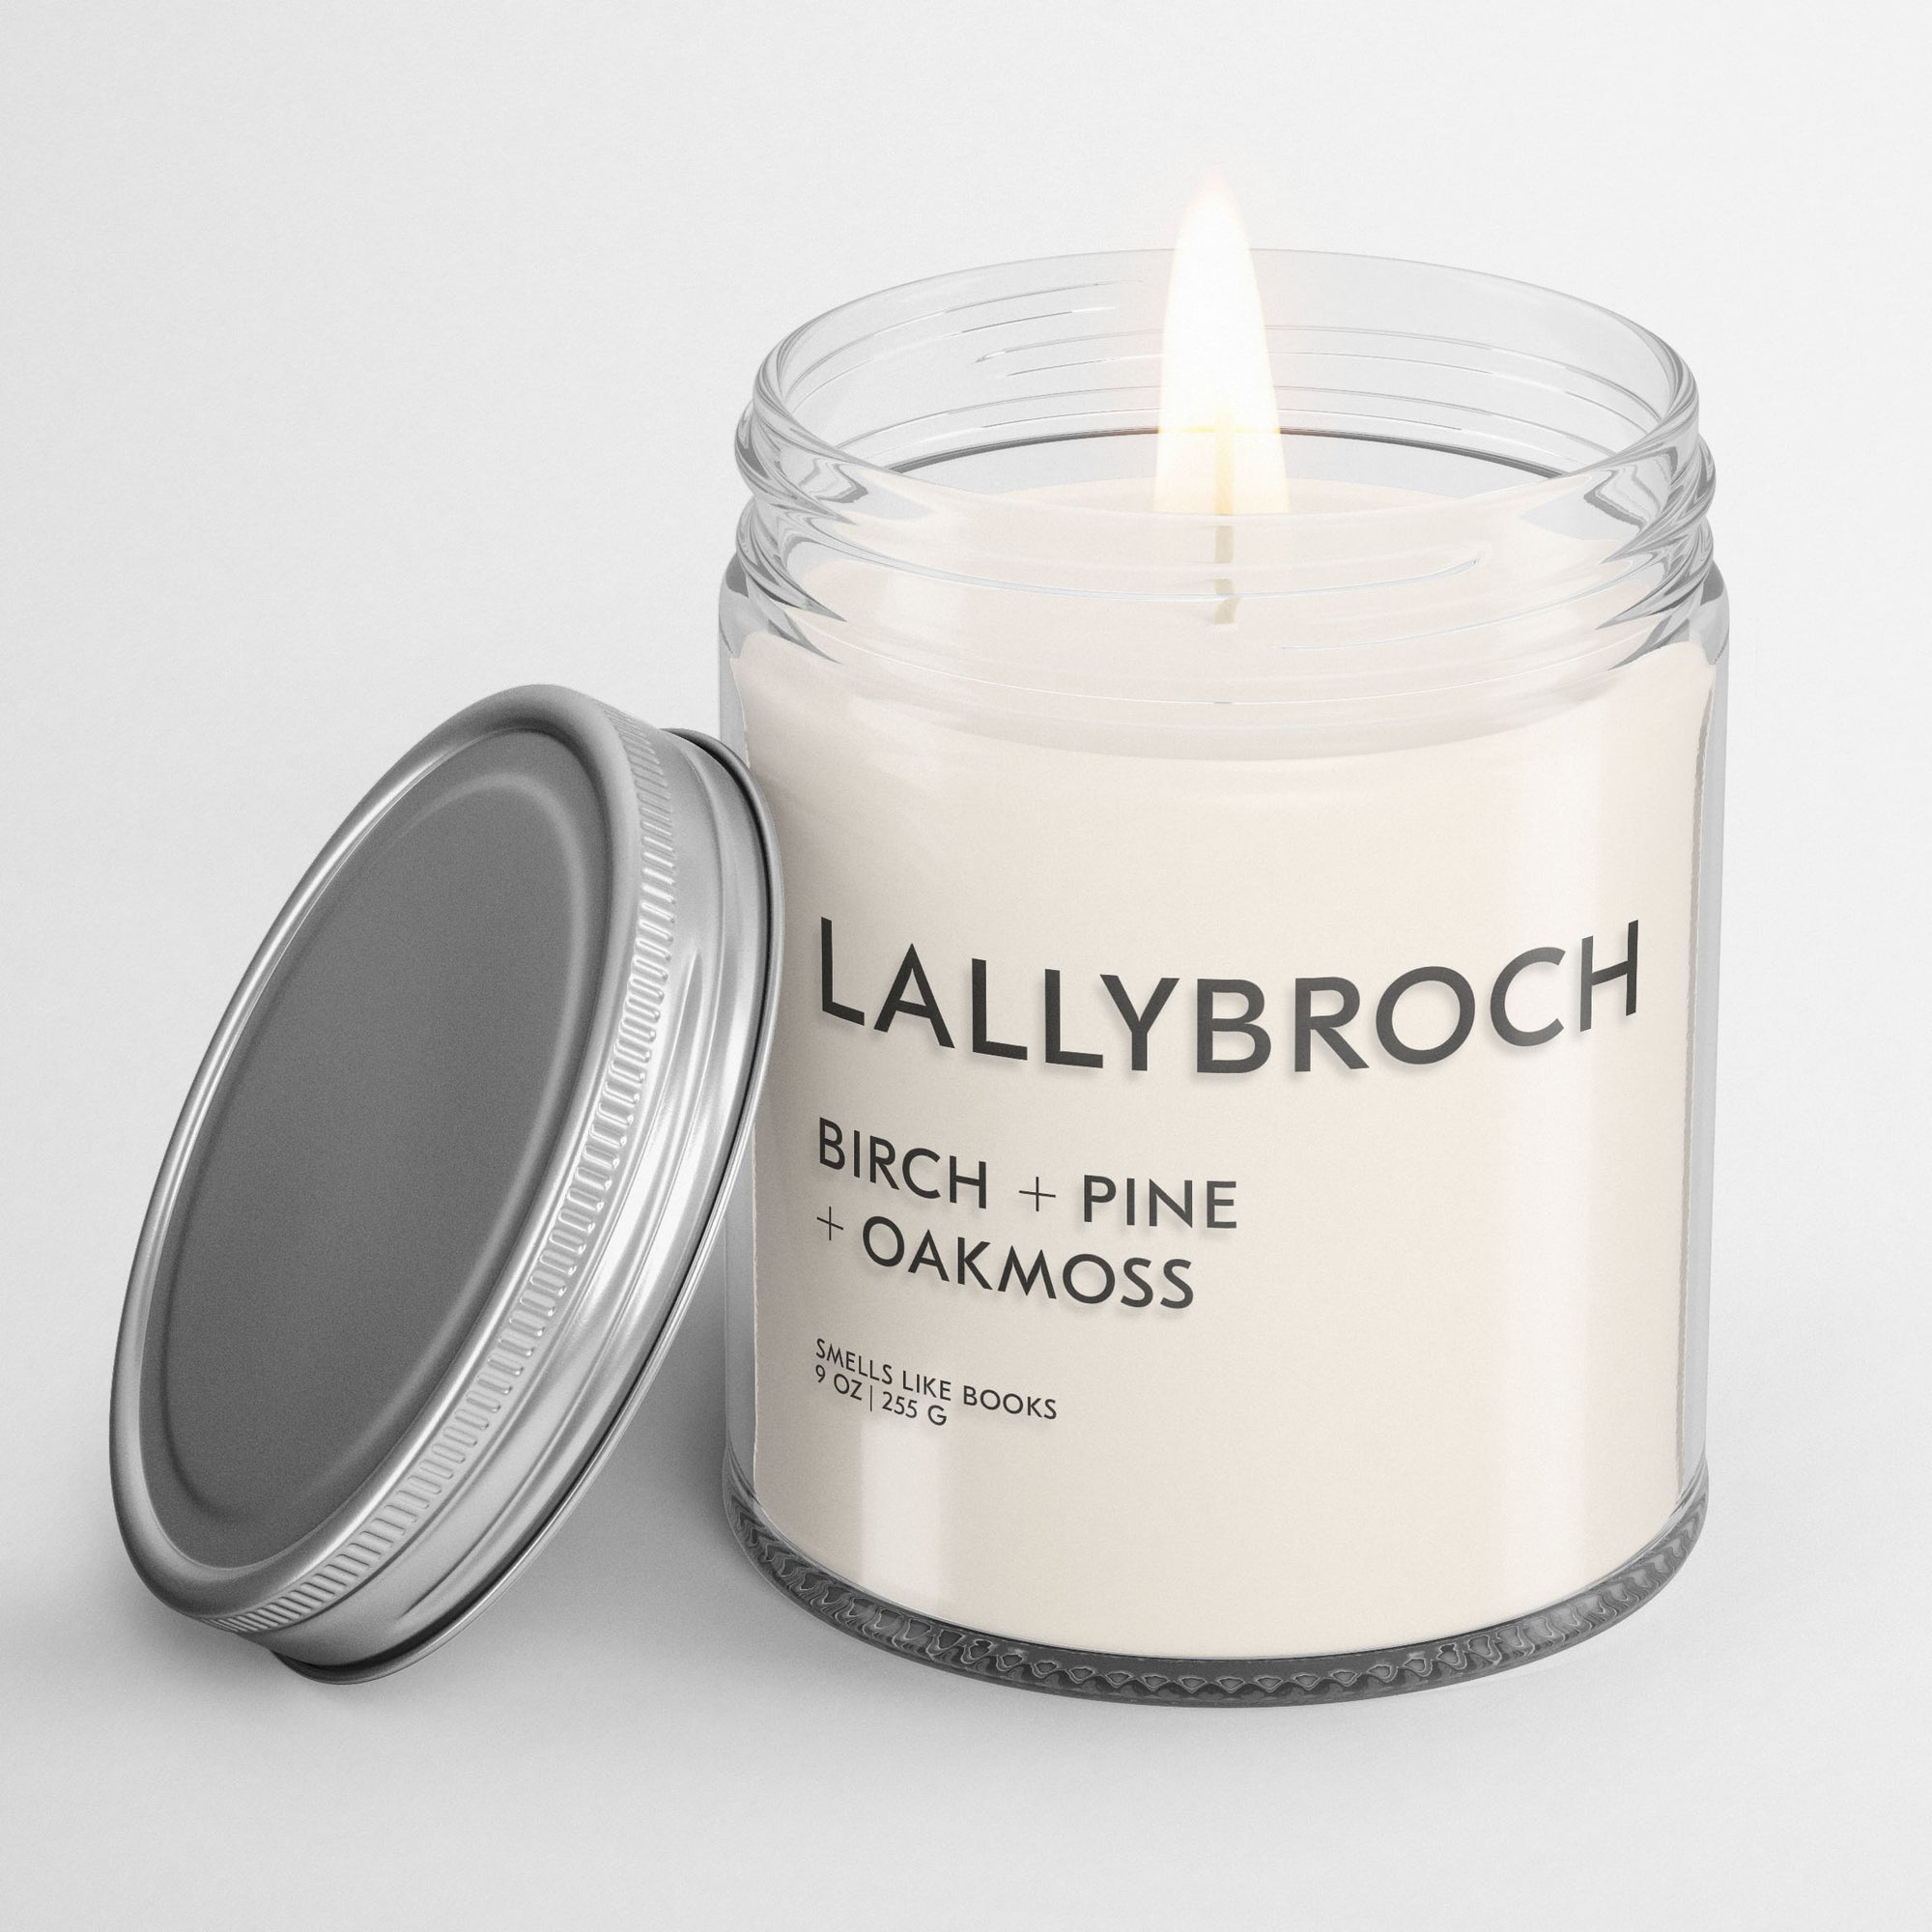 LALLYBROCH | wholesale